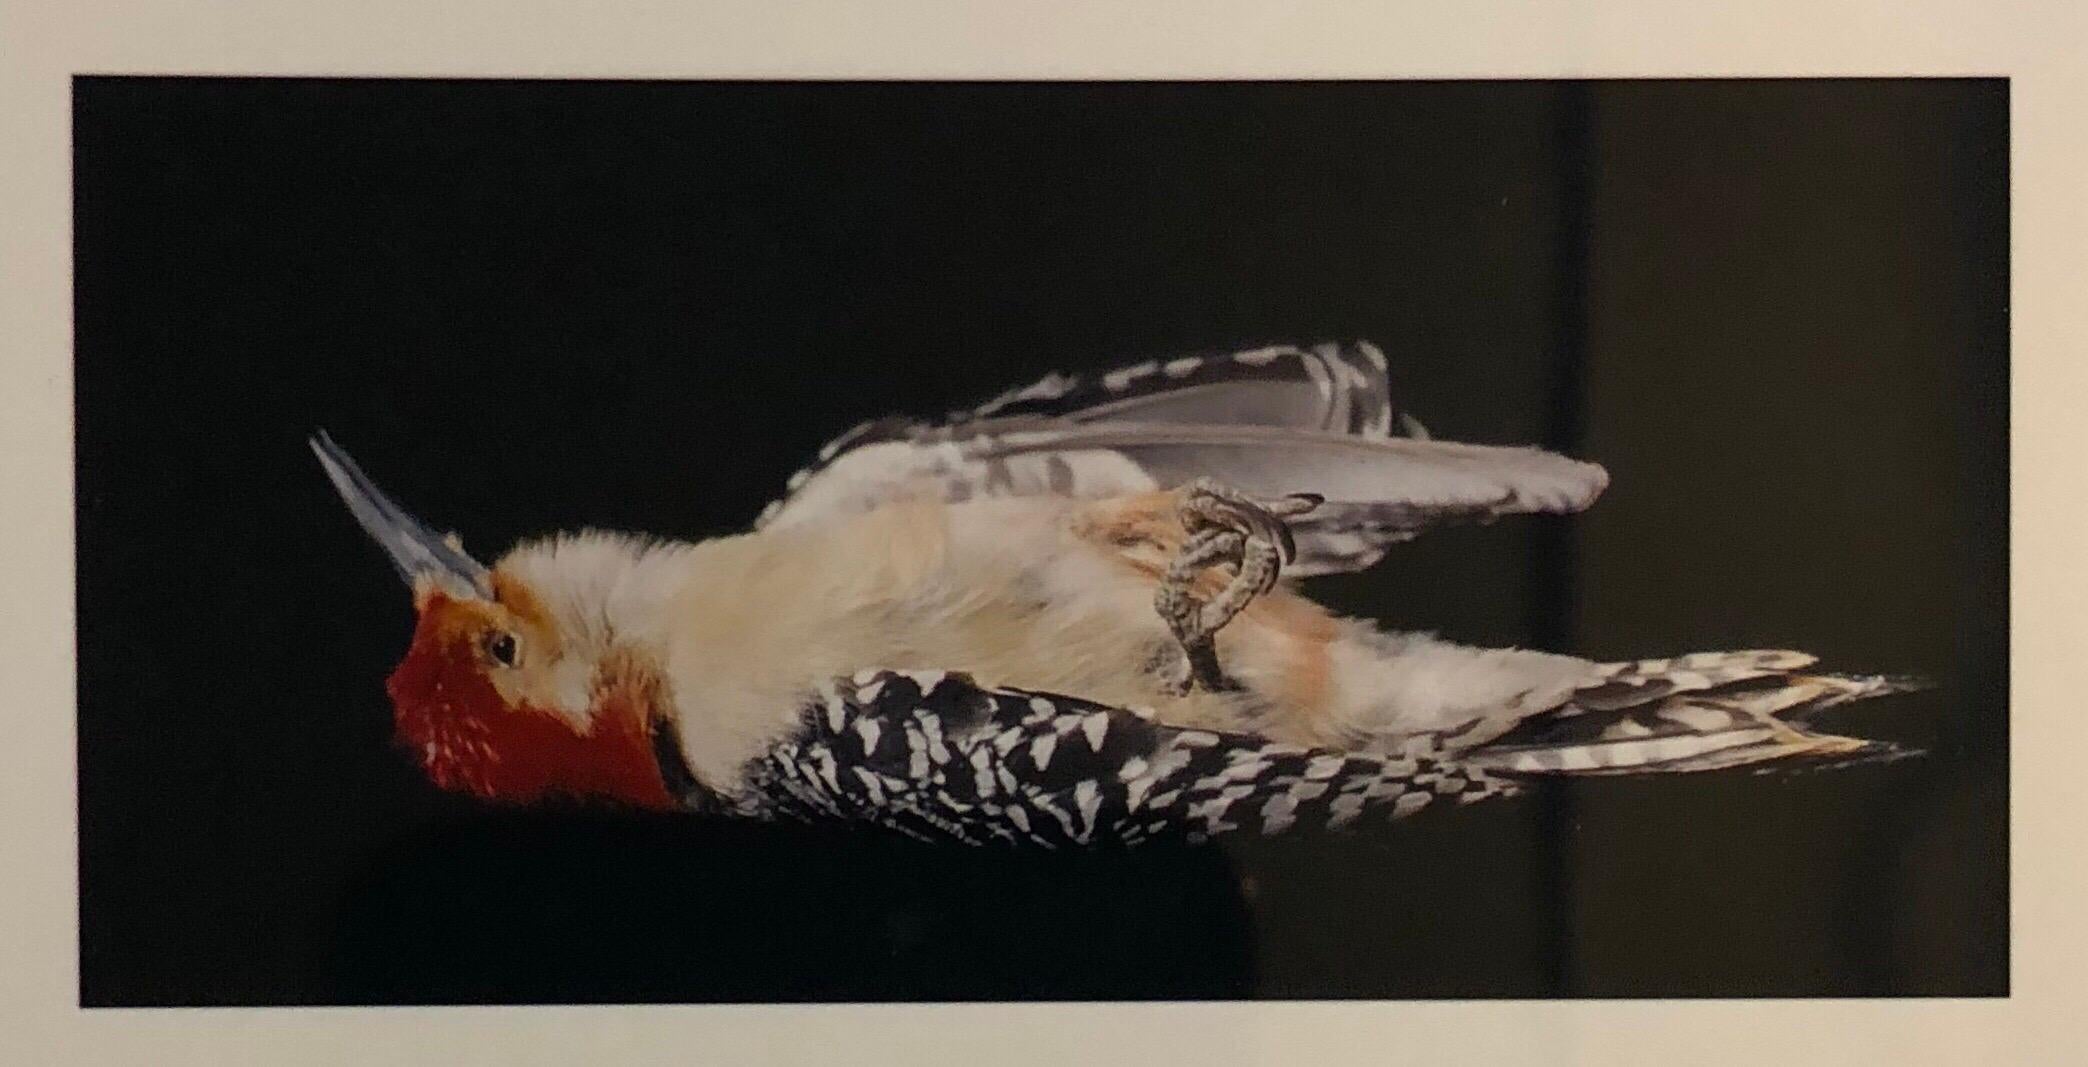 Vögel, Cibachromer Fotodruck, signiert Konzeptuelle Kunst (Konzeptionell), Photograph, von Brenda Zlamany